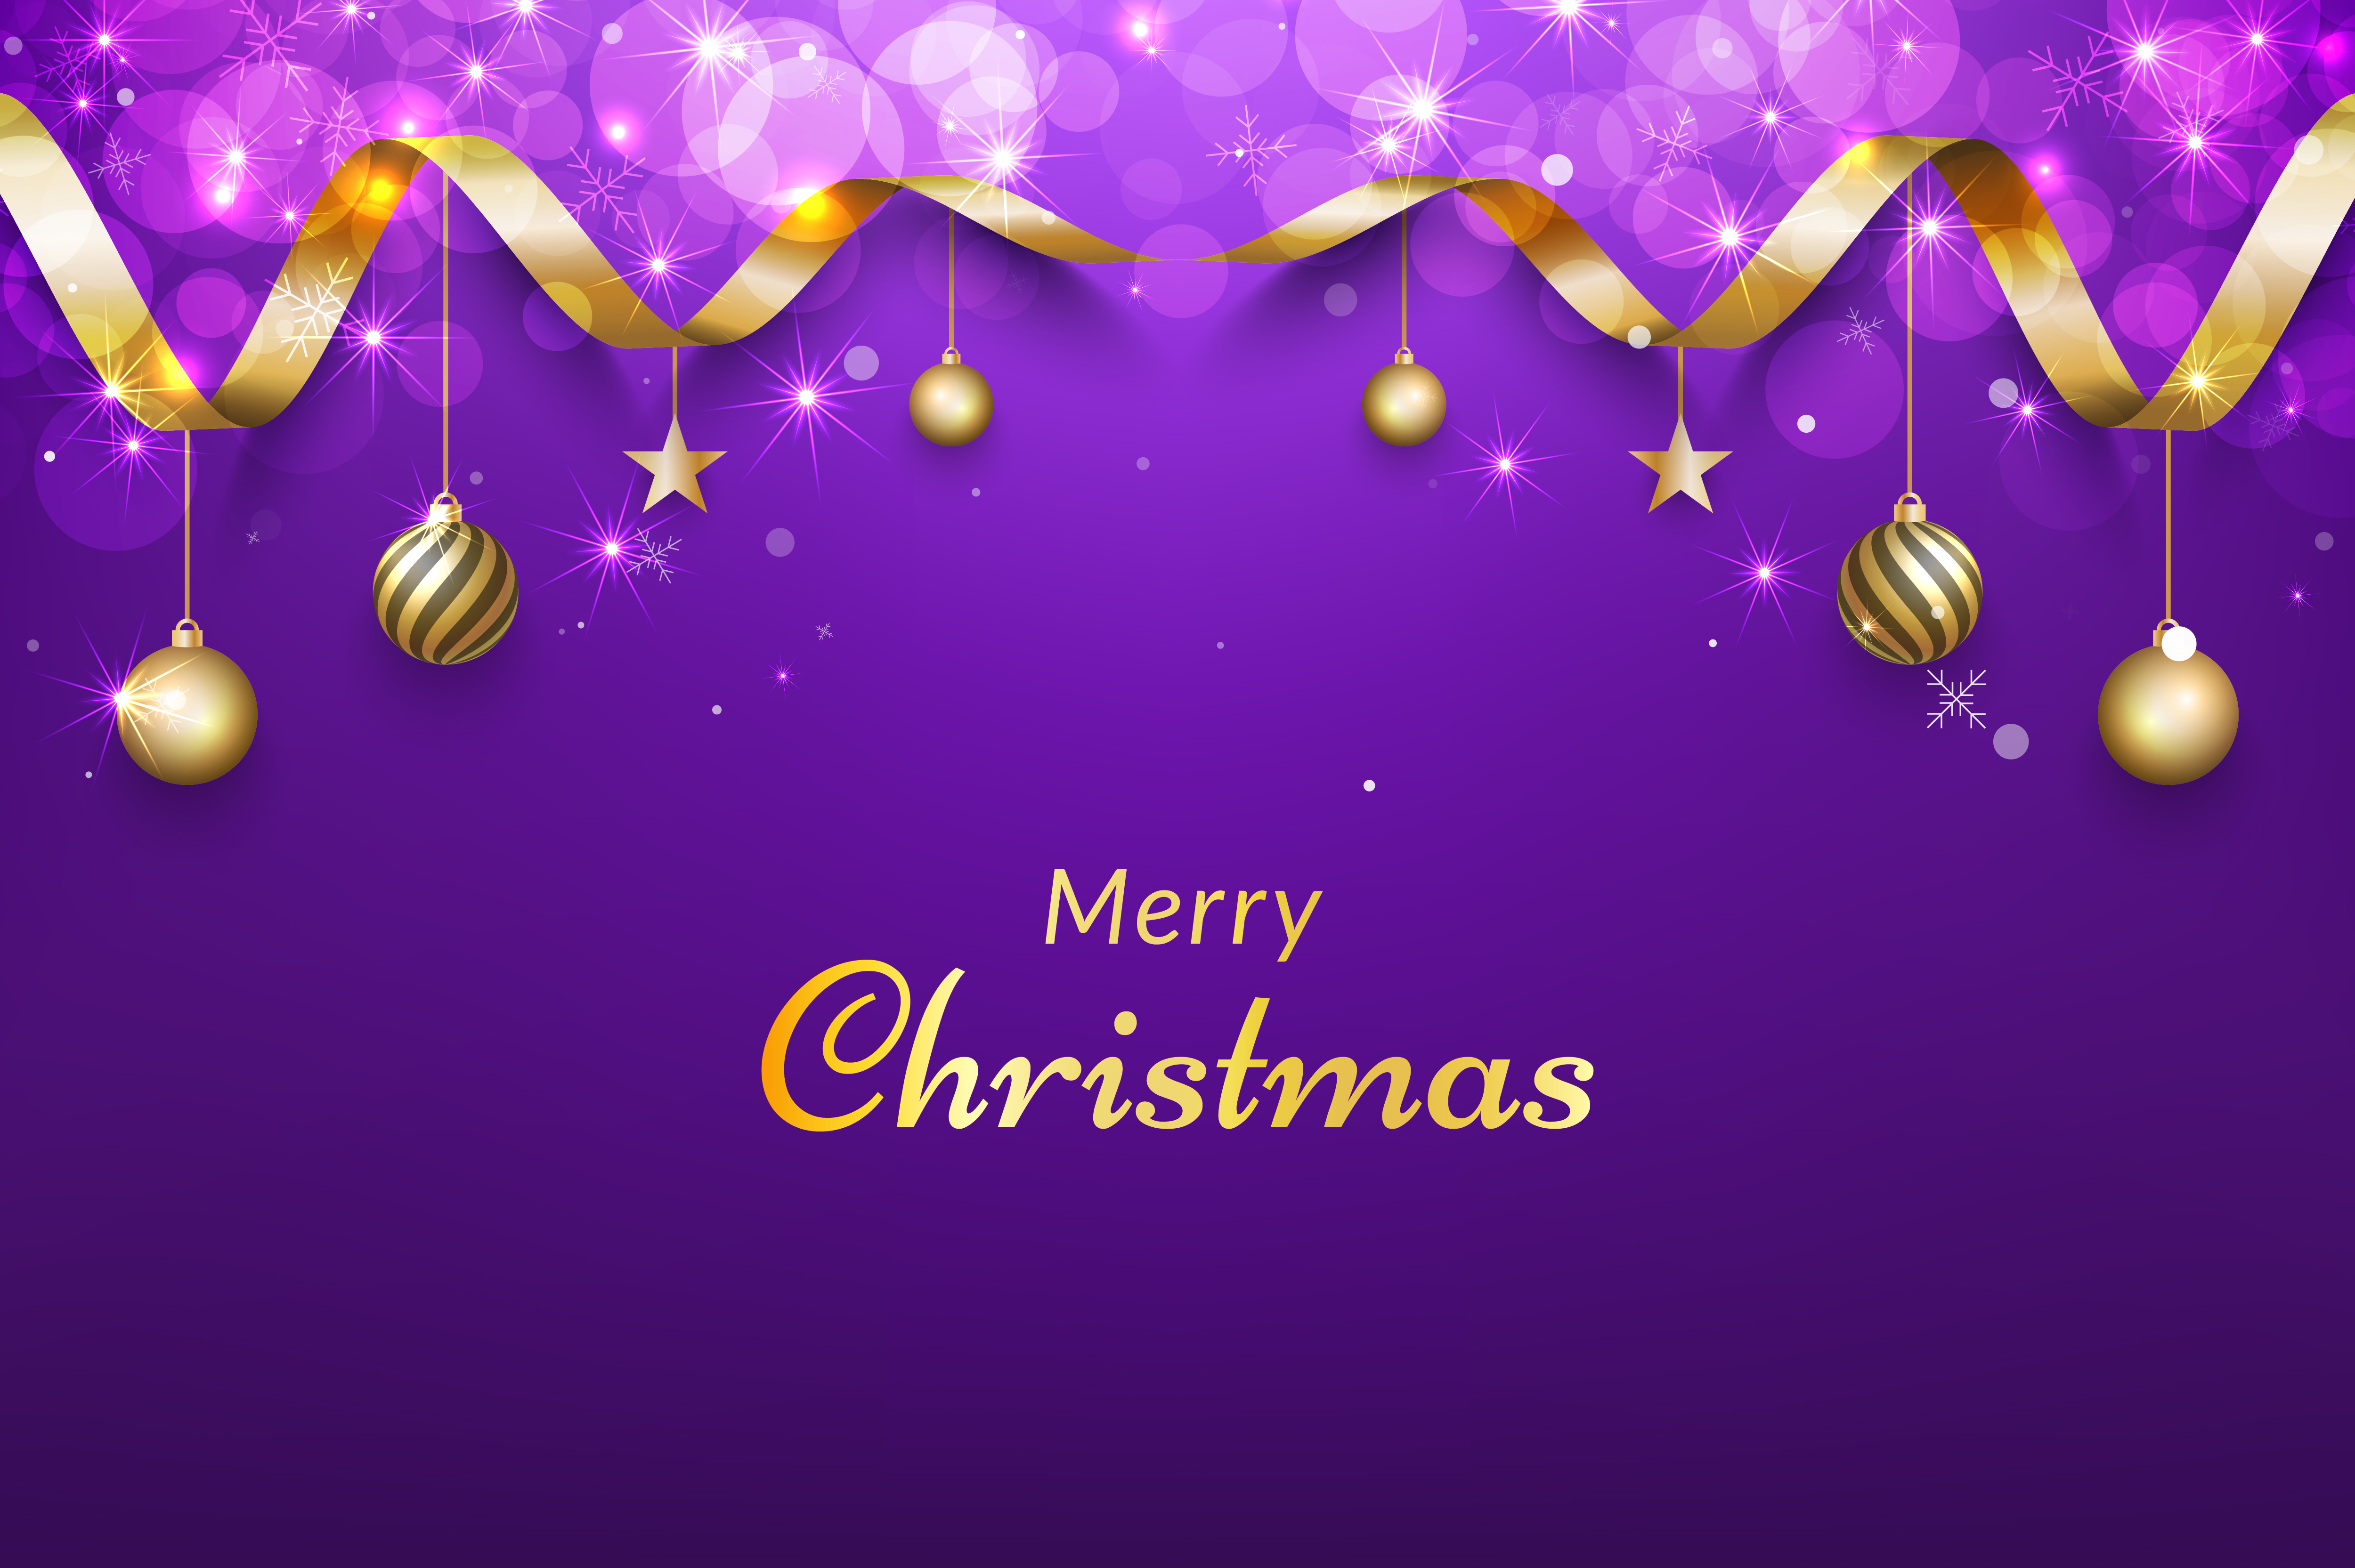 Nền Giáng Sinh Màu Tím với Ruy Băng Vàng - Purple christmas background with gold ribbon Chiếc ruy băng vàng rực rỡ trên nền màu tím Giáng Sinh sẽ khiến bạn không thể rời mắt khỏi bức hình này. Đây sẽ là hình nền tuyệt đẹp và ấn tượng, thu hút và tạo niềm vui cho người xem.